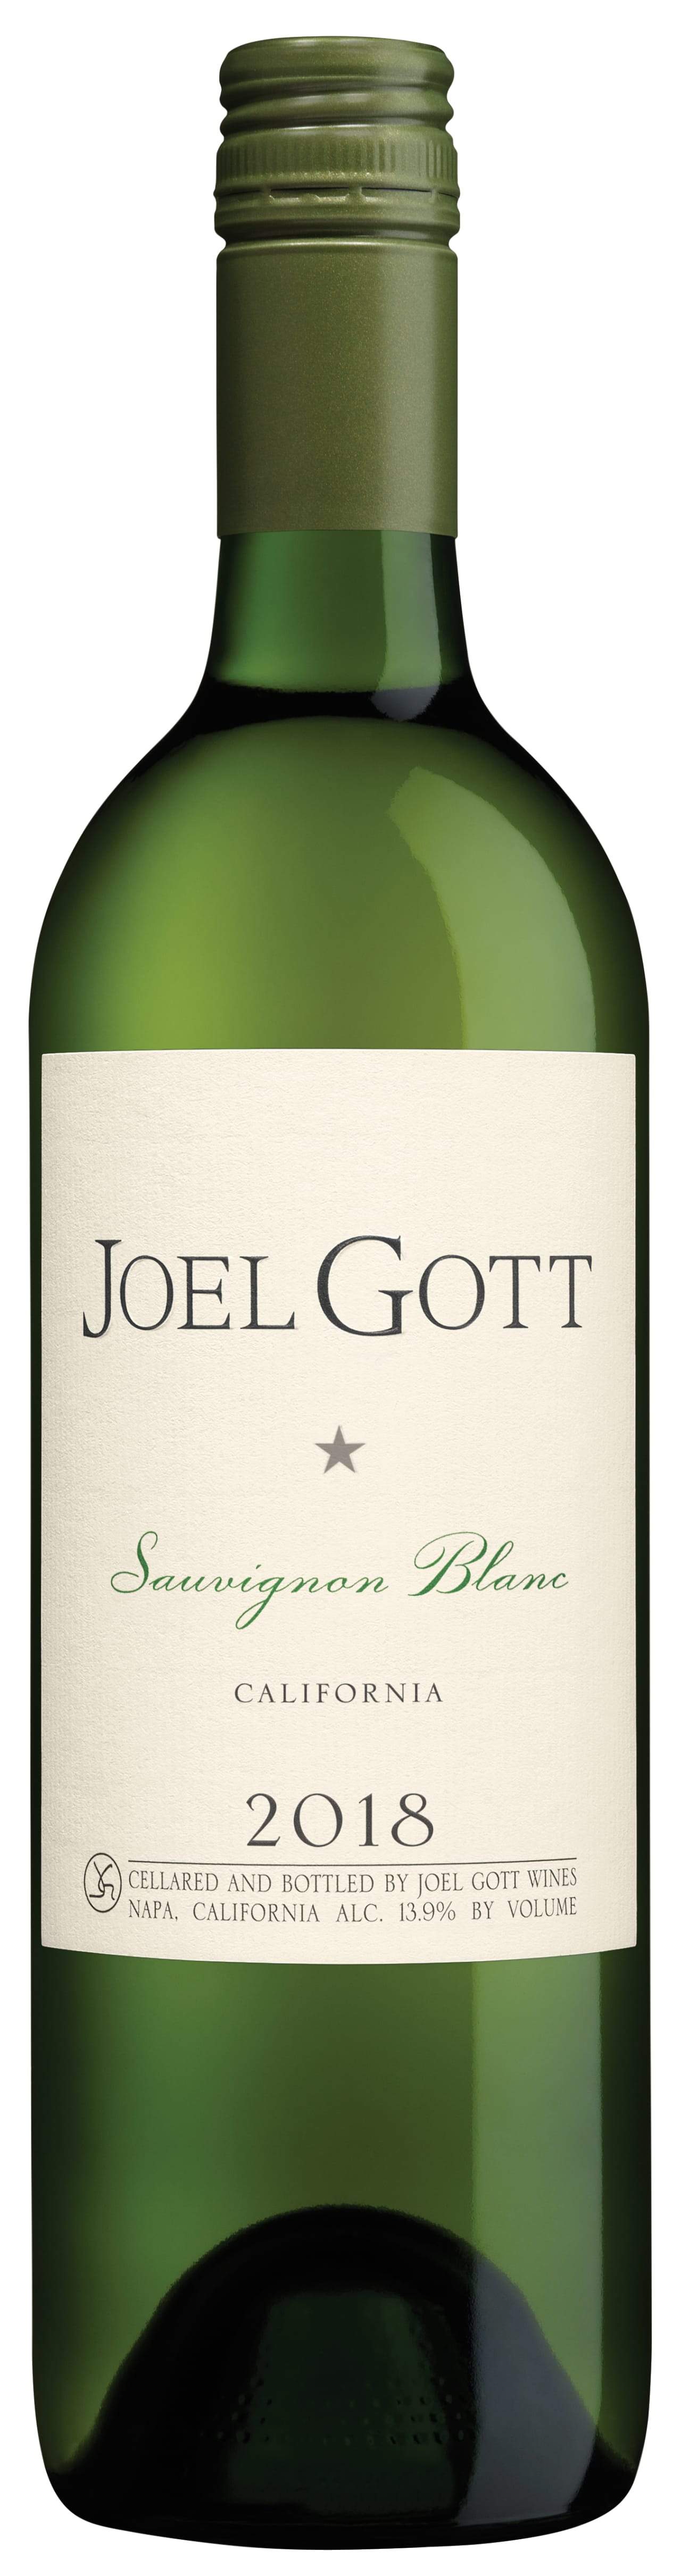 Joel Gott Sauvignon Blanc